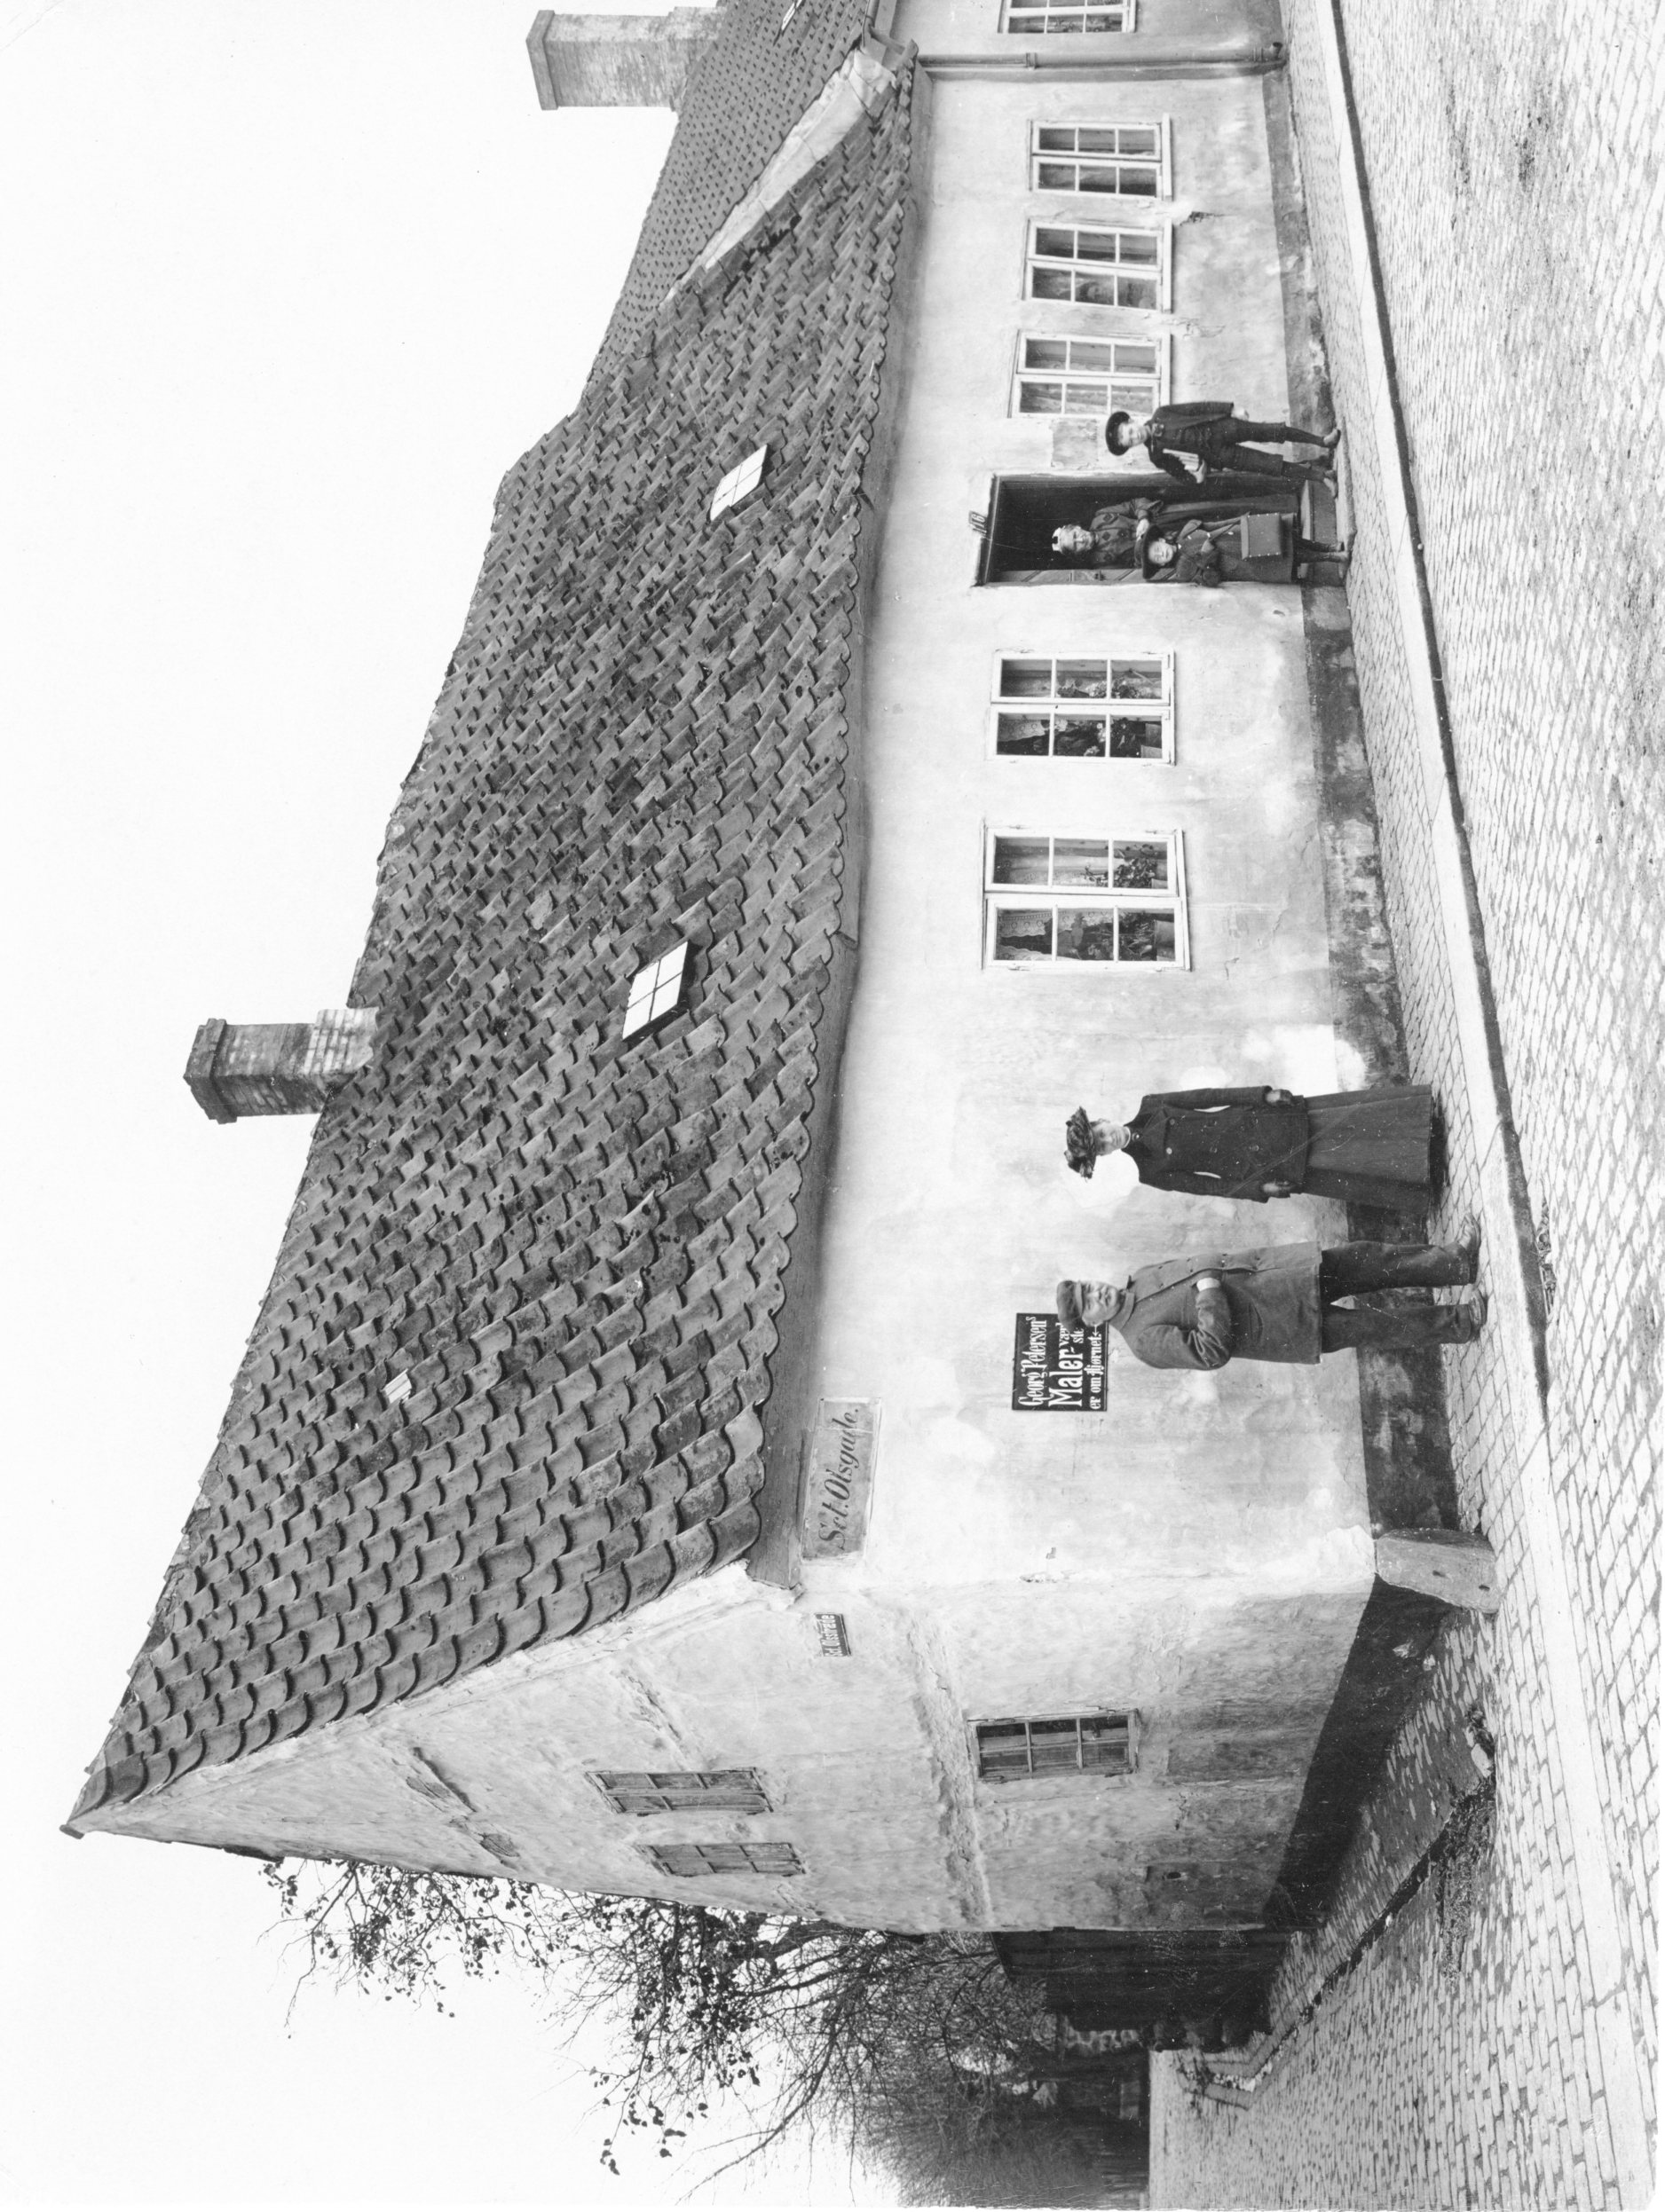 Foto af bygningen Sct. Olsgade 16 i starten af 1900-tallet med beboere.